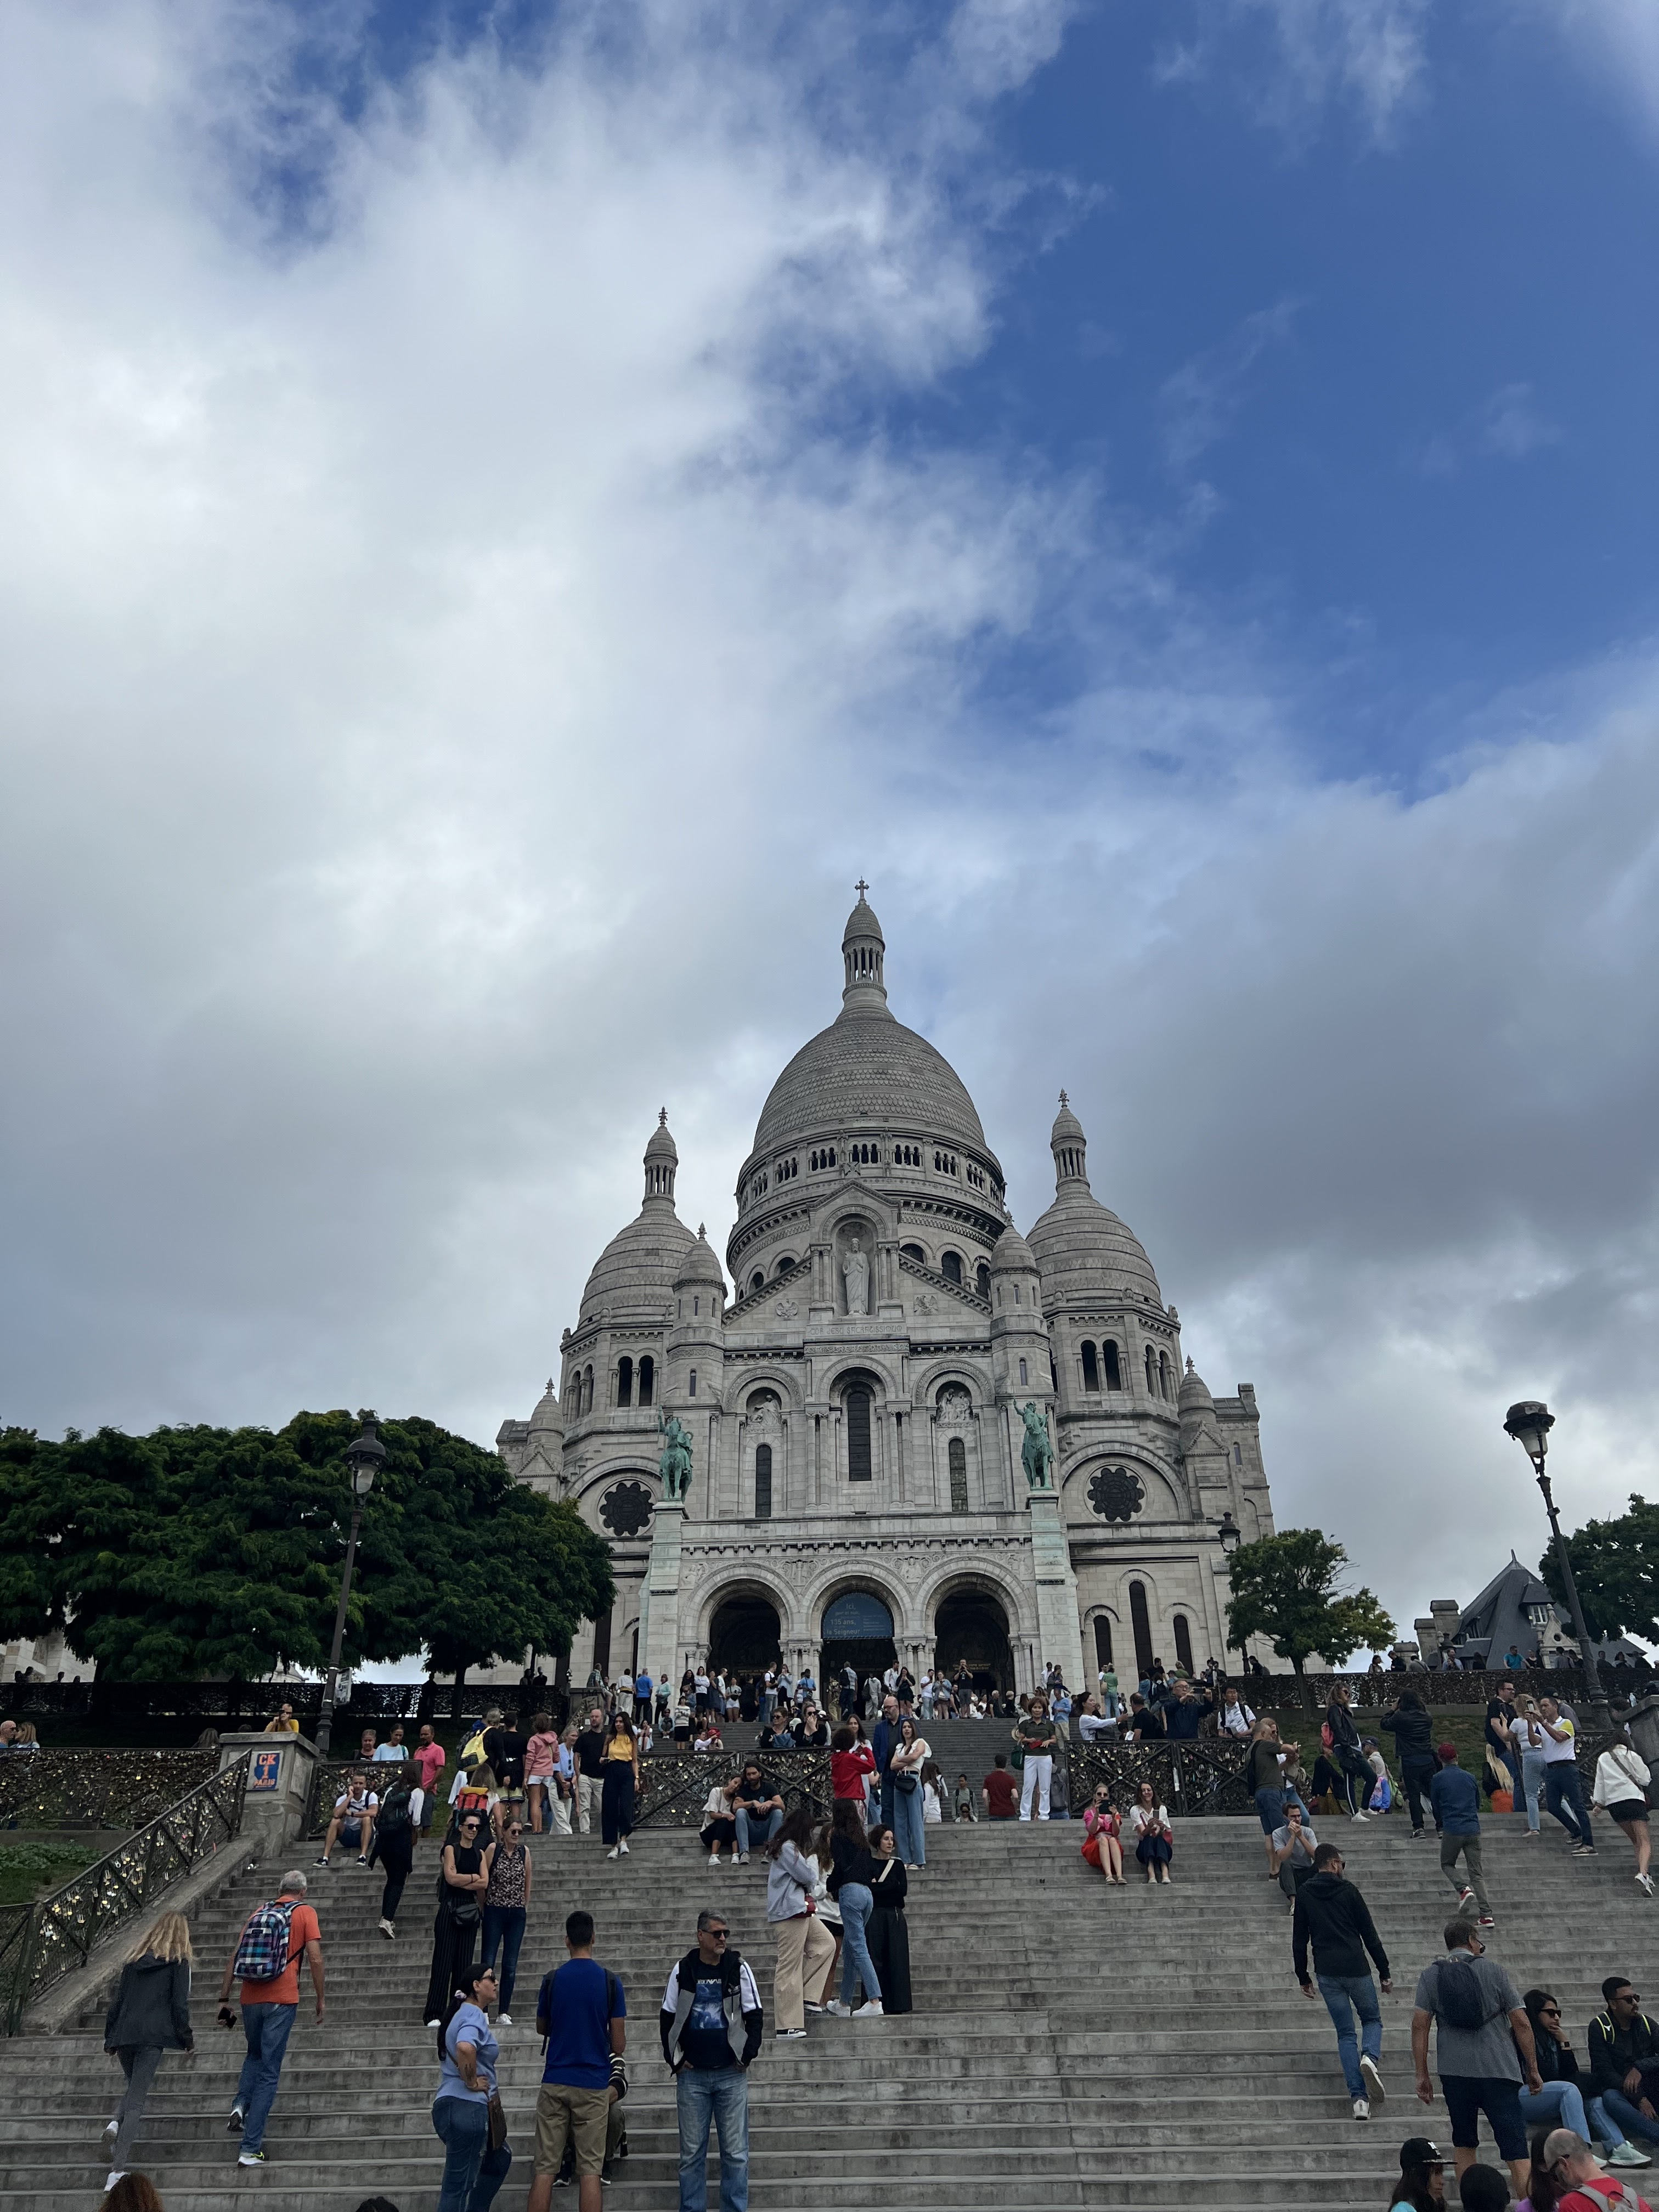 Le Sacré-Coeur, paris france, paris travel guide, paris churches